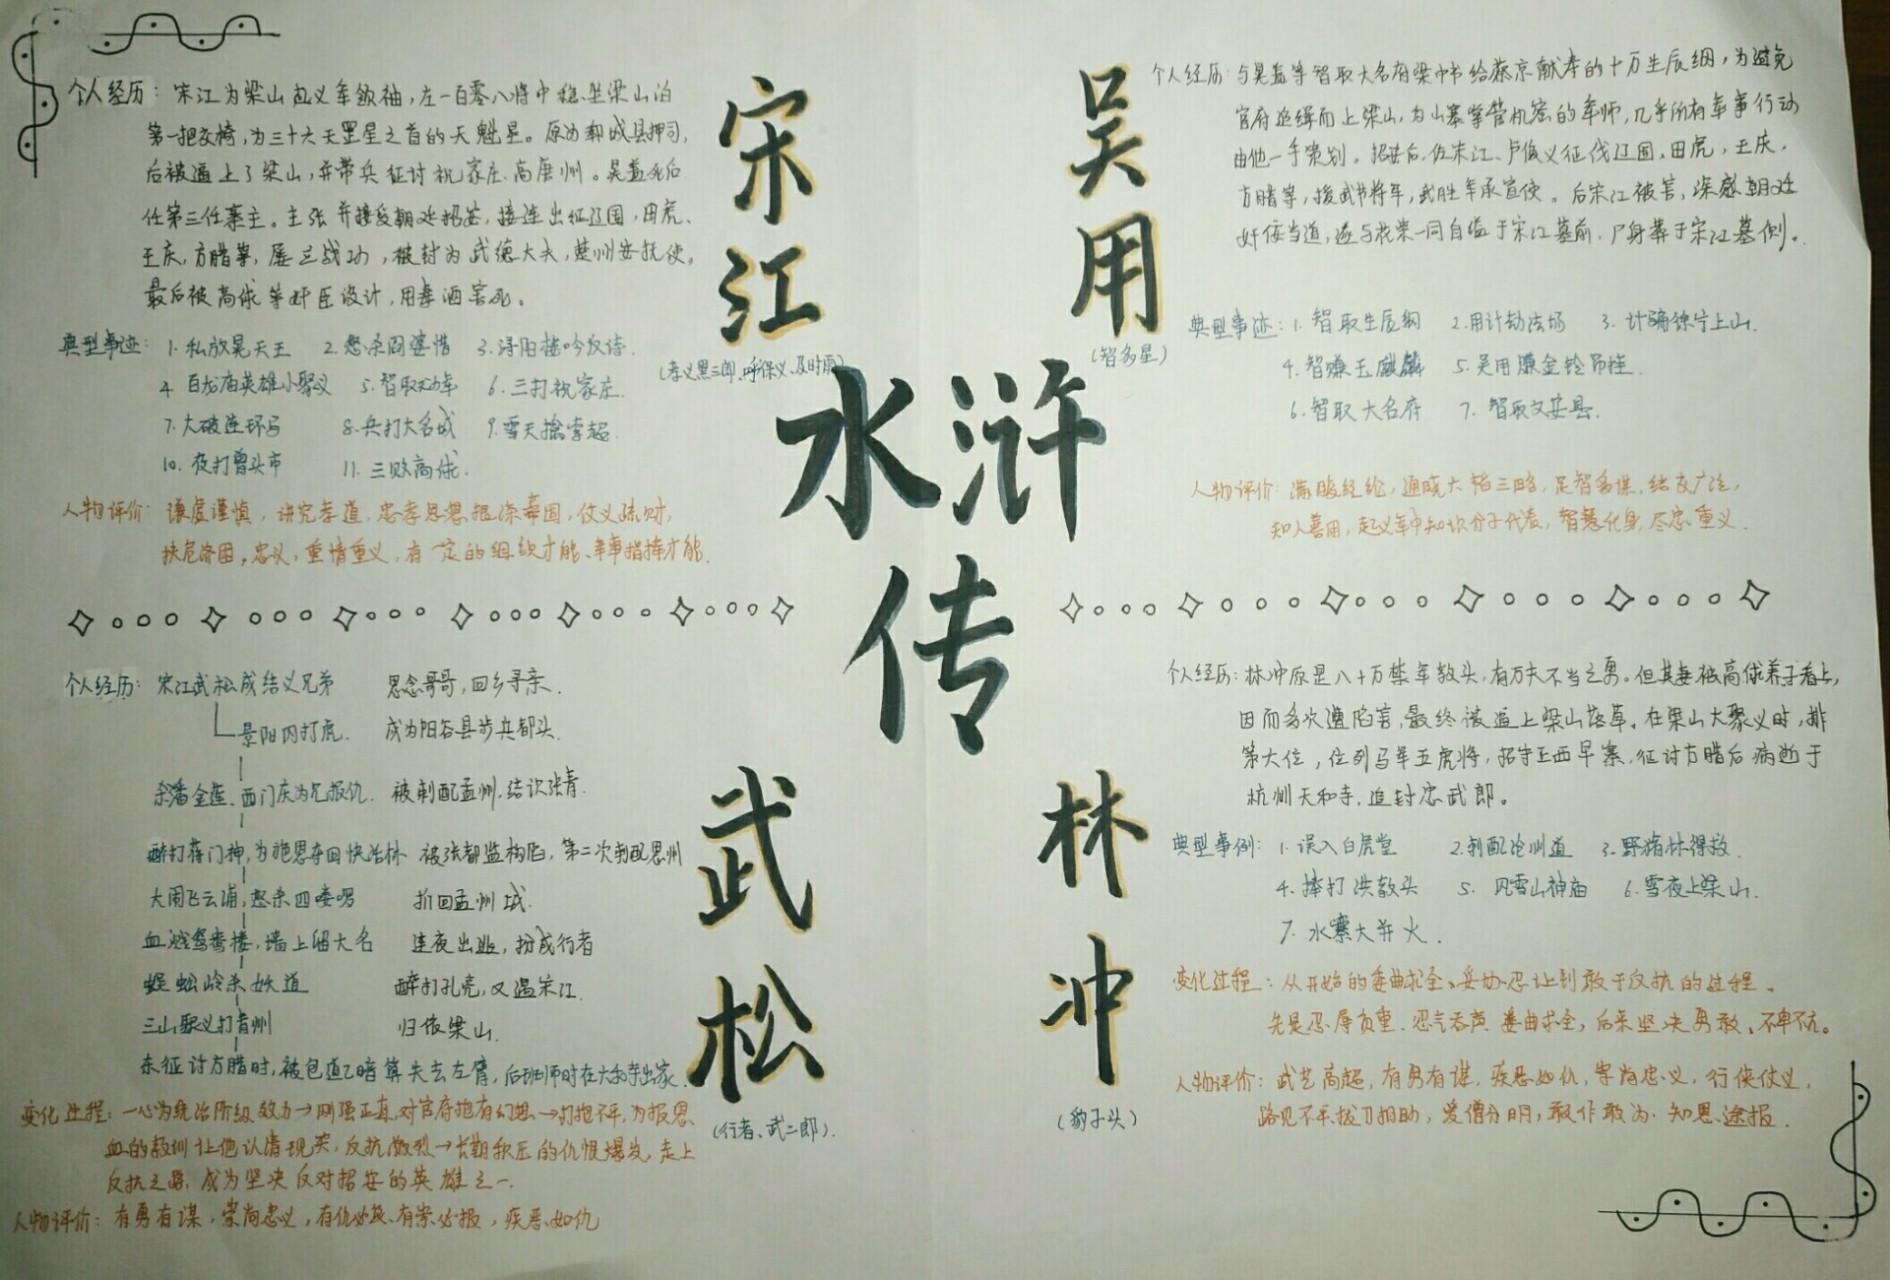 水浒传人物小报95 主要是宋江,吴用,武松和林冲的人生经历,典型事件